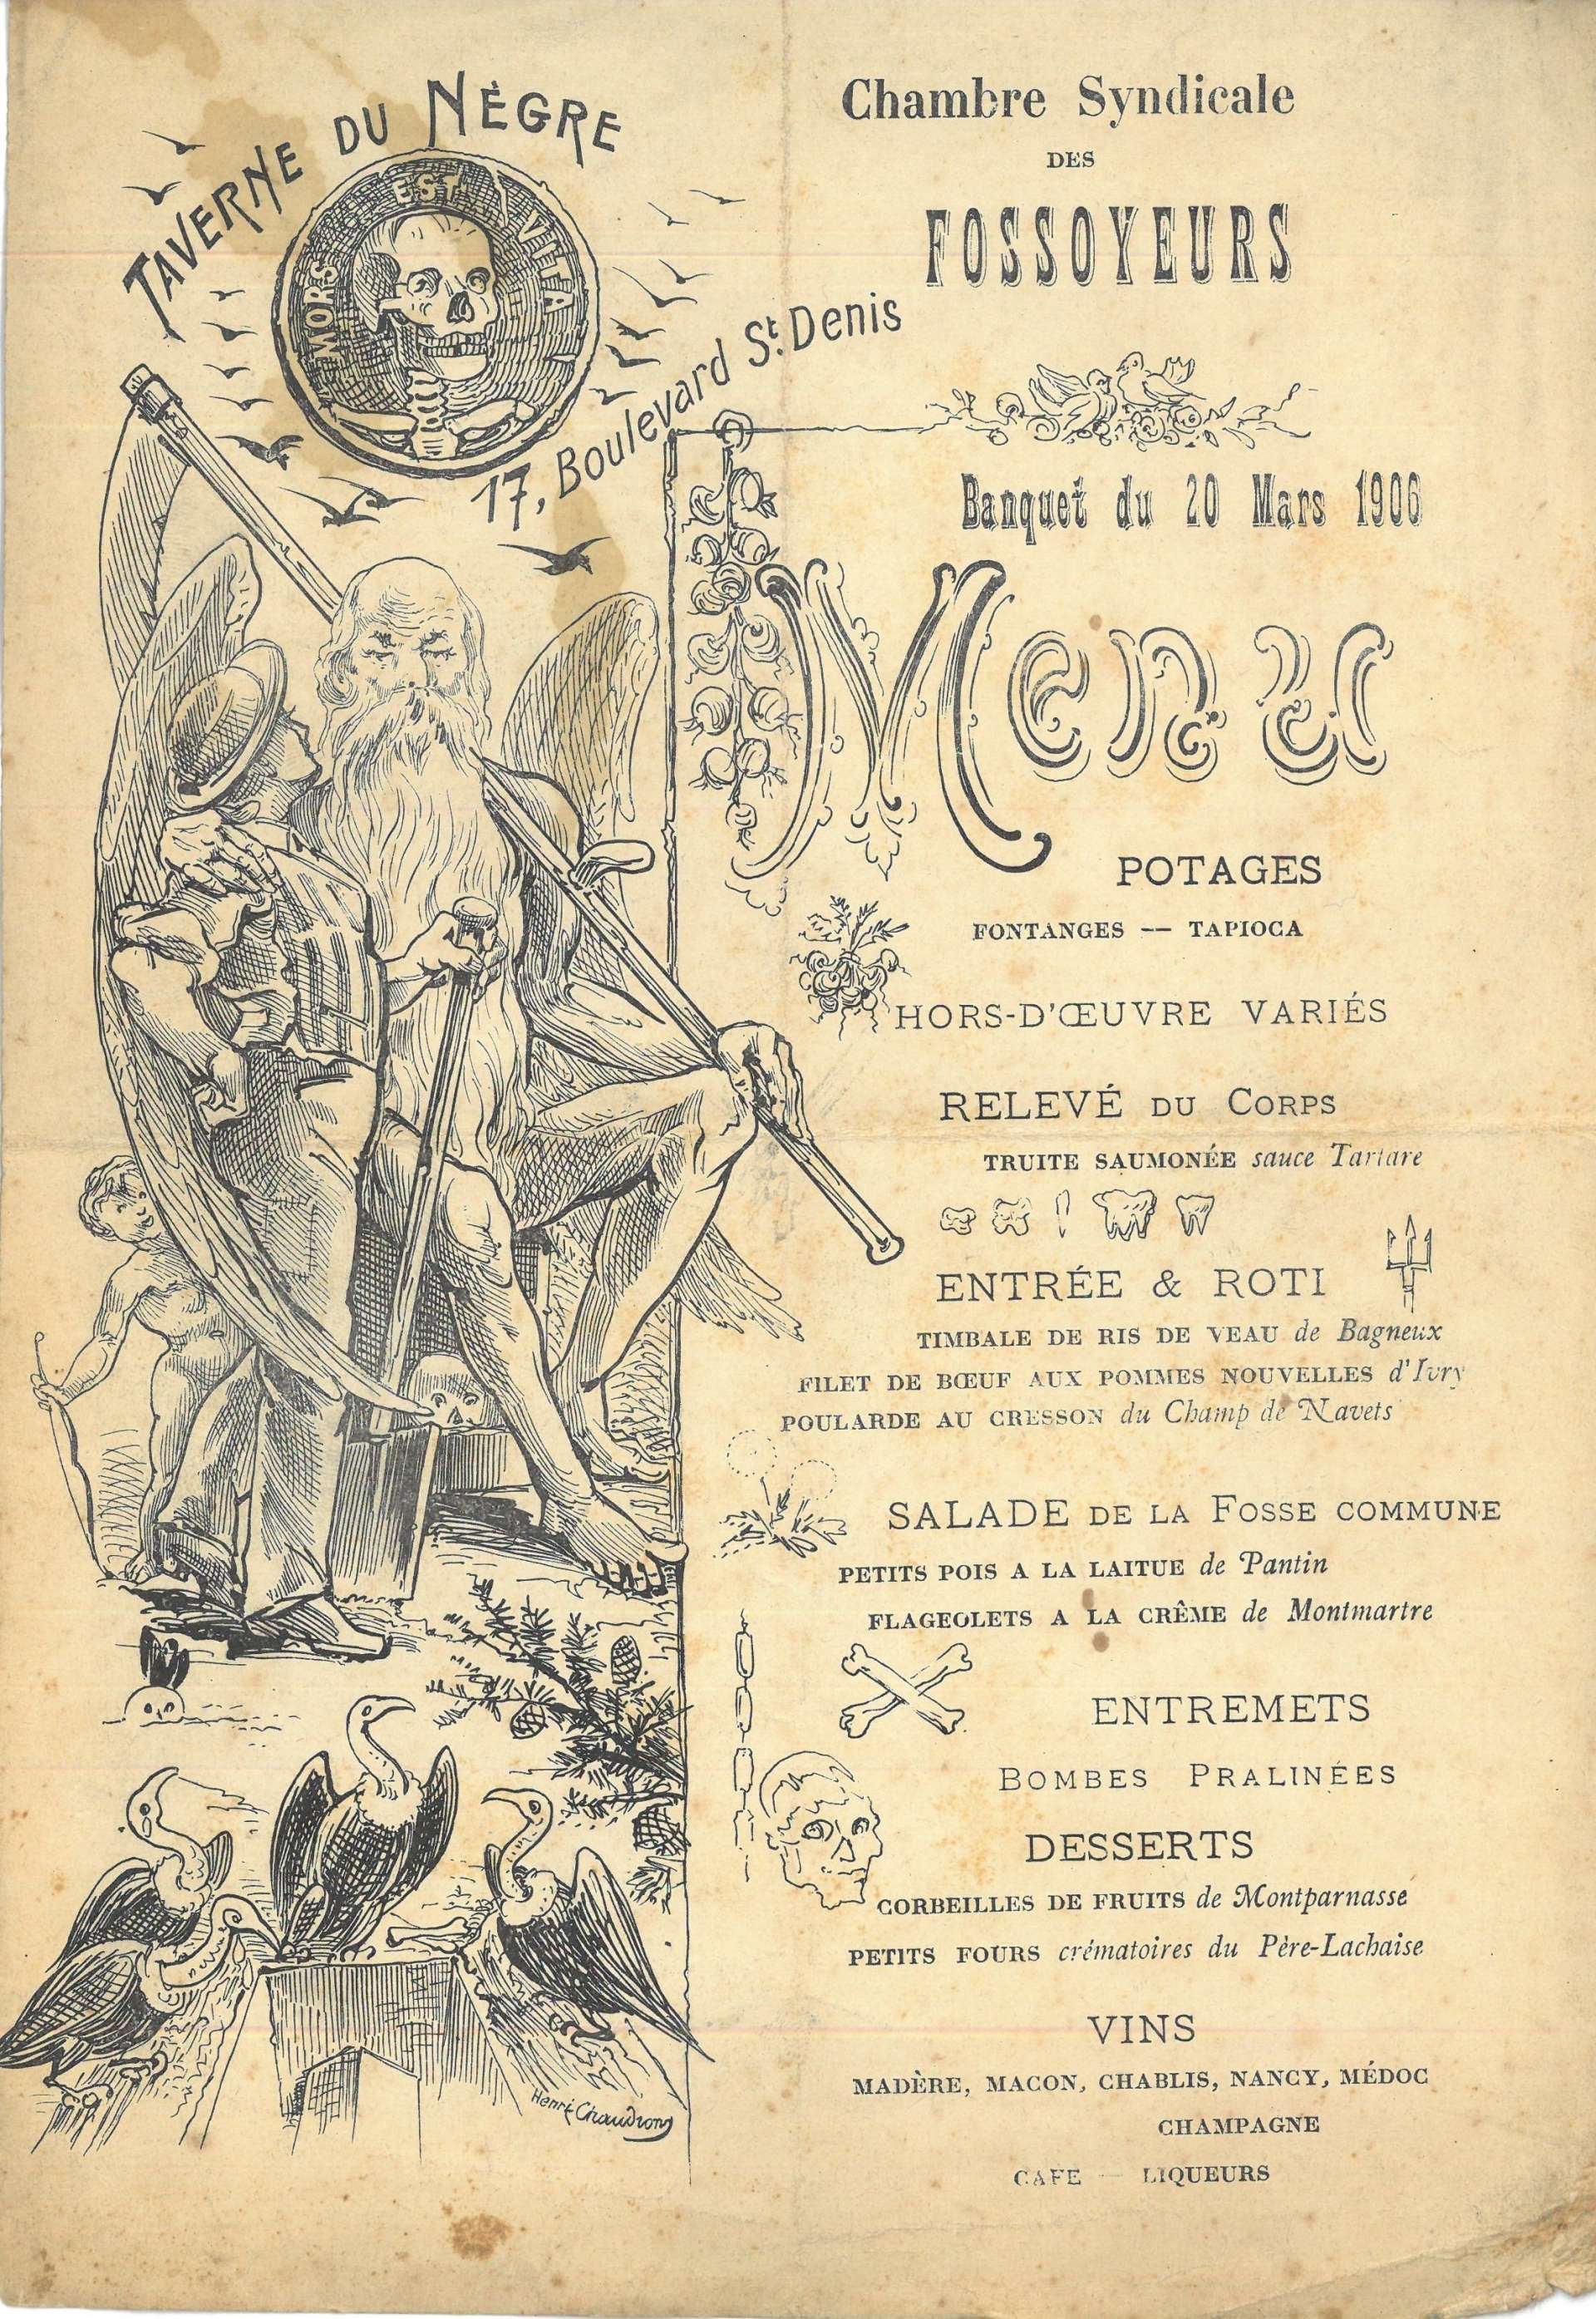 Menu du banquet des fossoyeurs, lithographie, 1906.